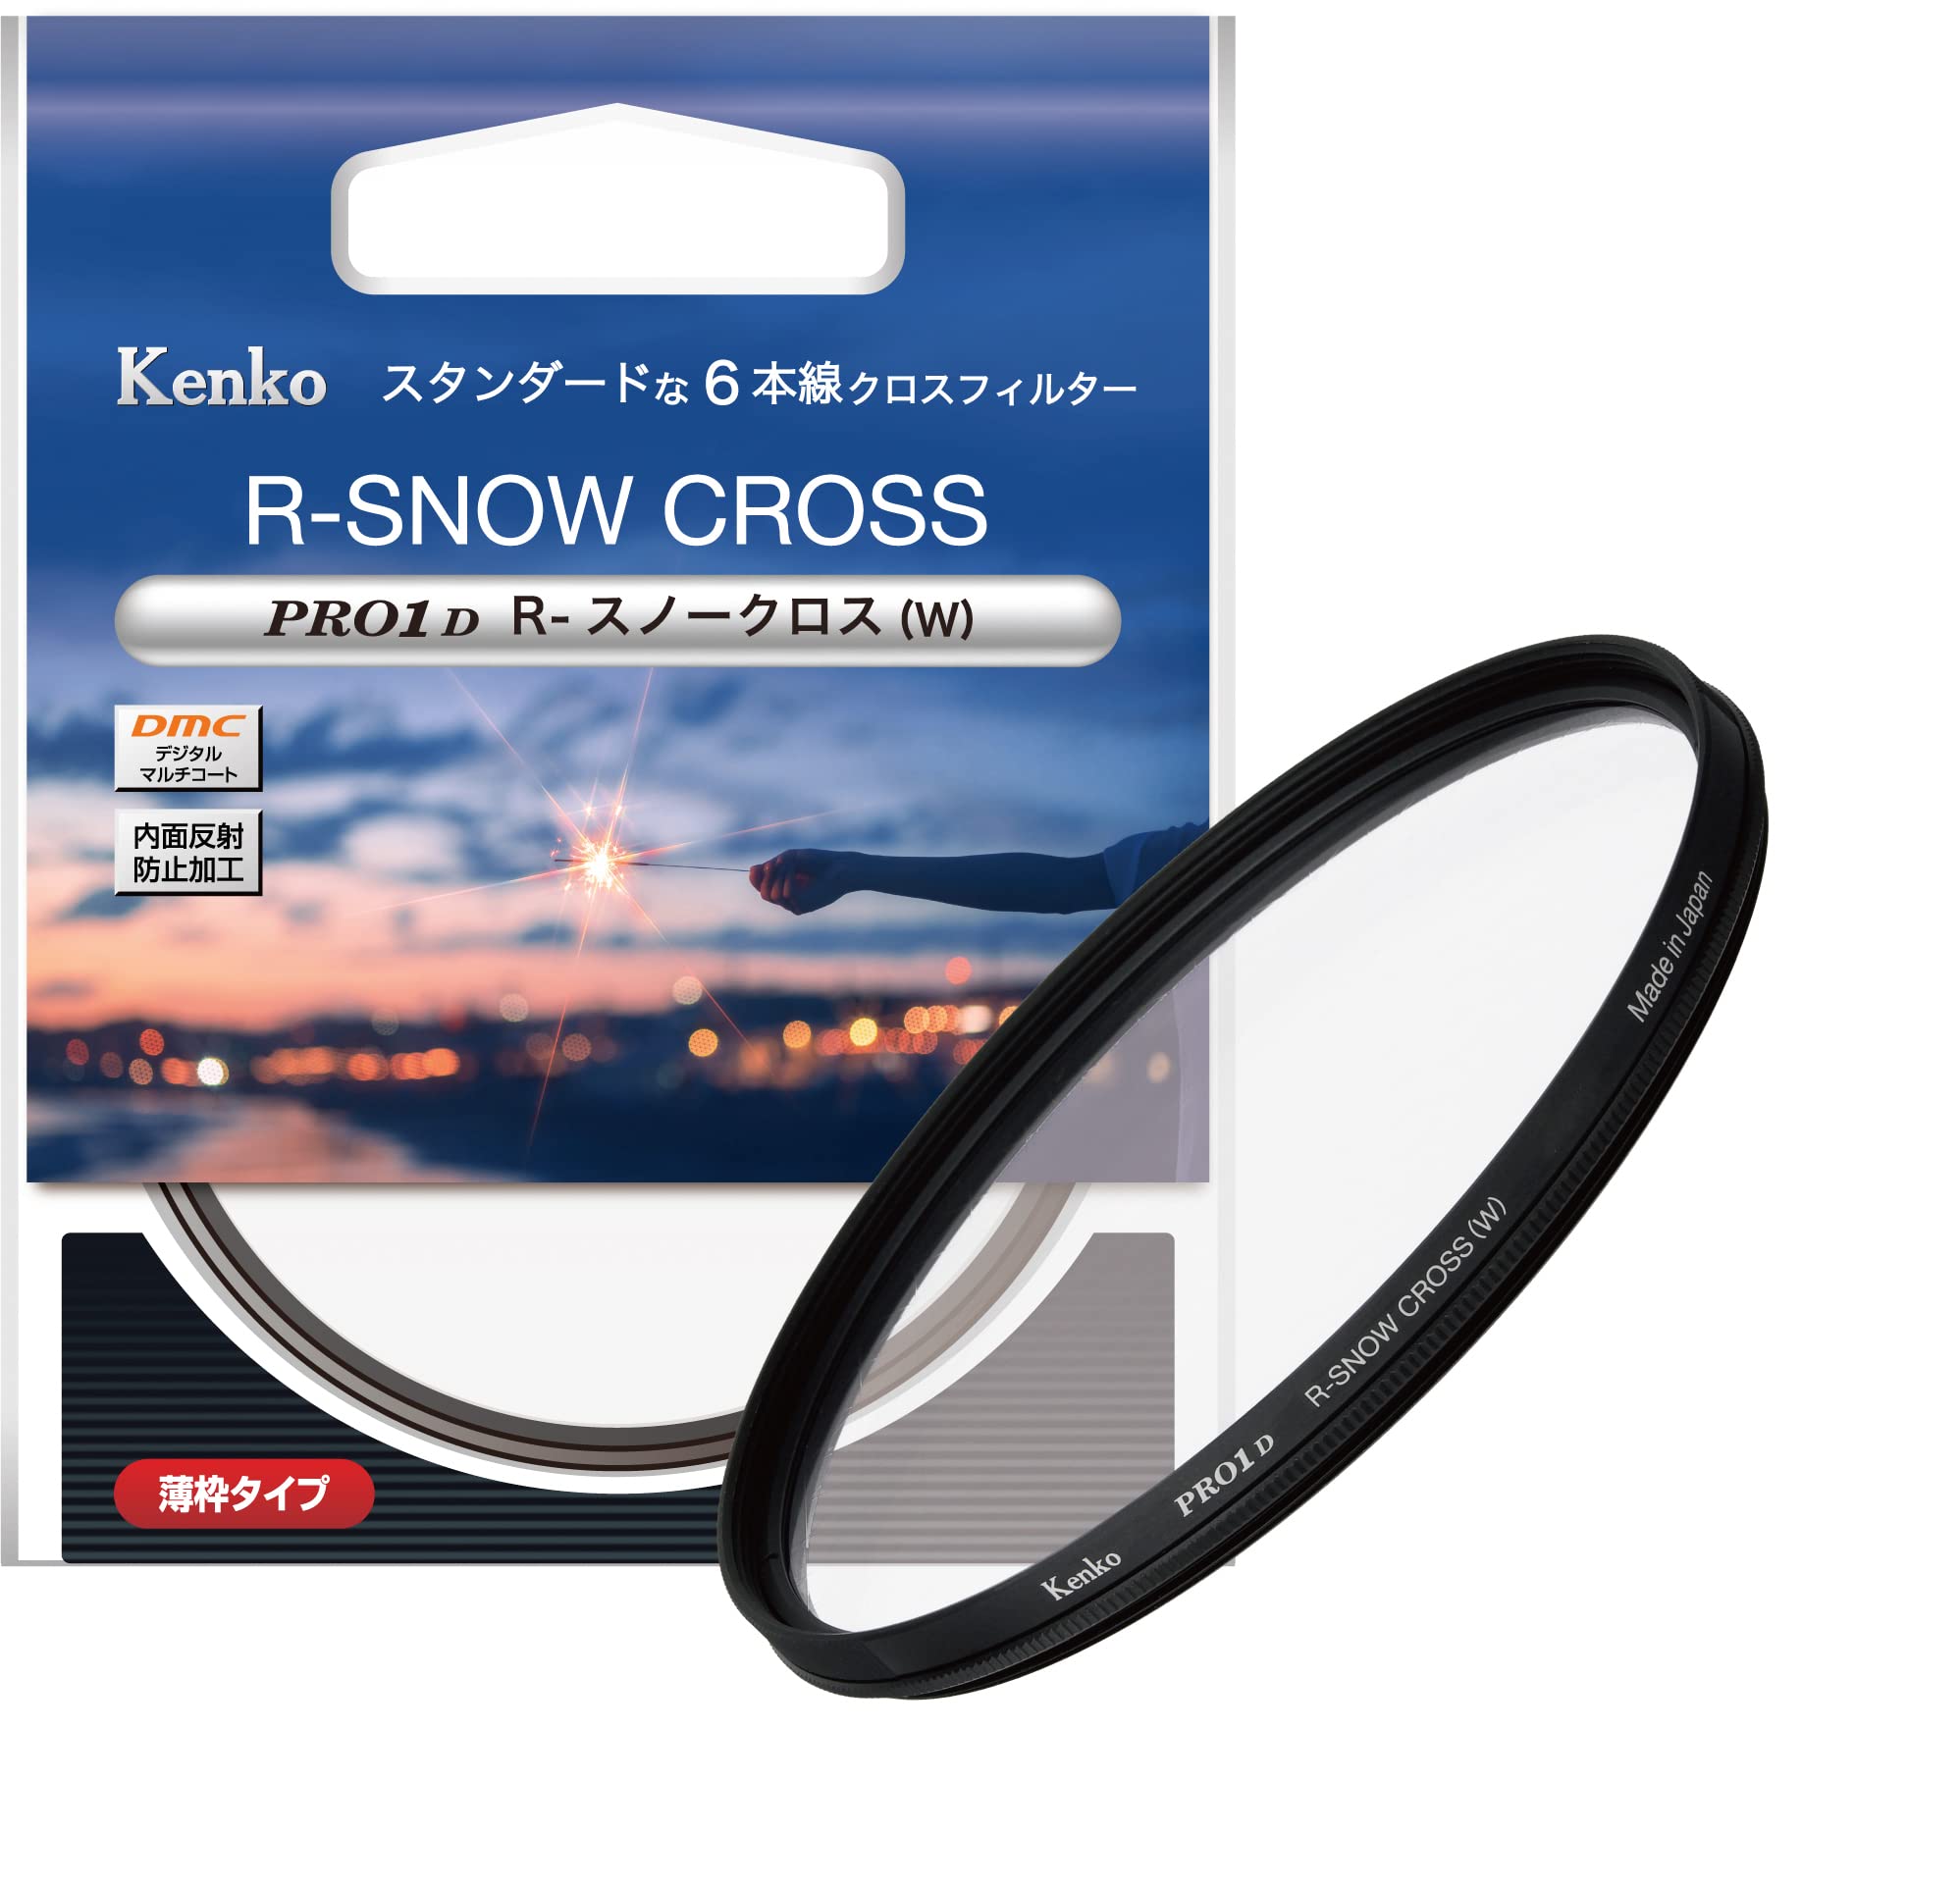 ケンコー(Kenko) クロスフィルター PRO1D R-スノークロス (W) 58mm 6本クロス効果 夜景・イルミネーション・光の演出に 薄枠 825310 特別